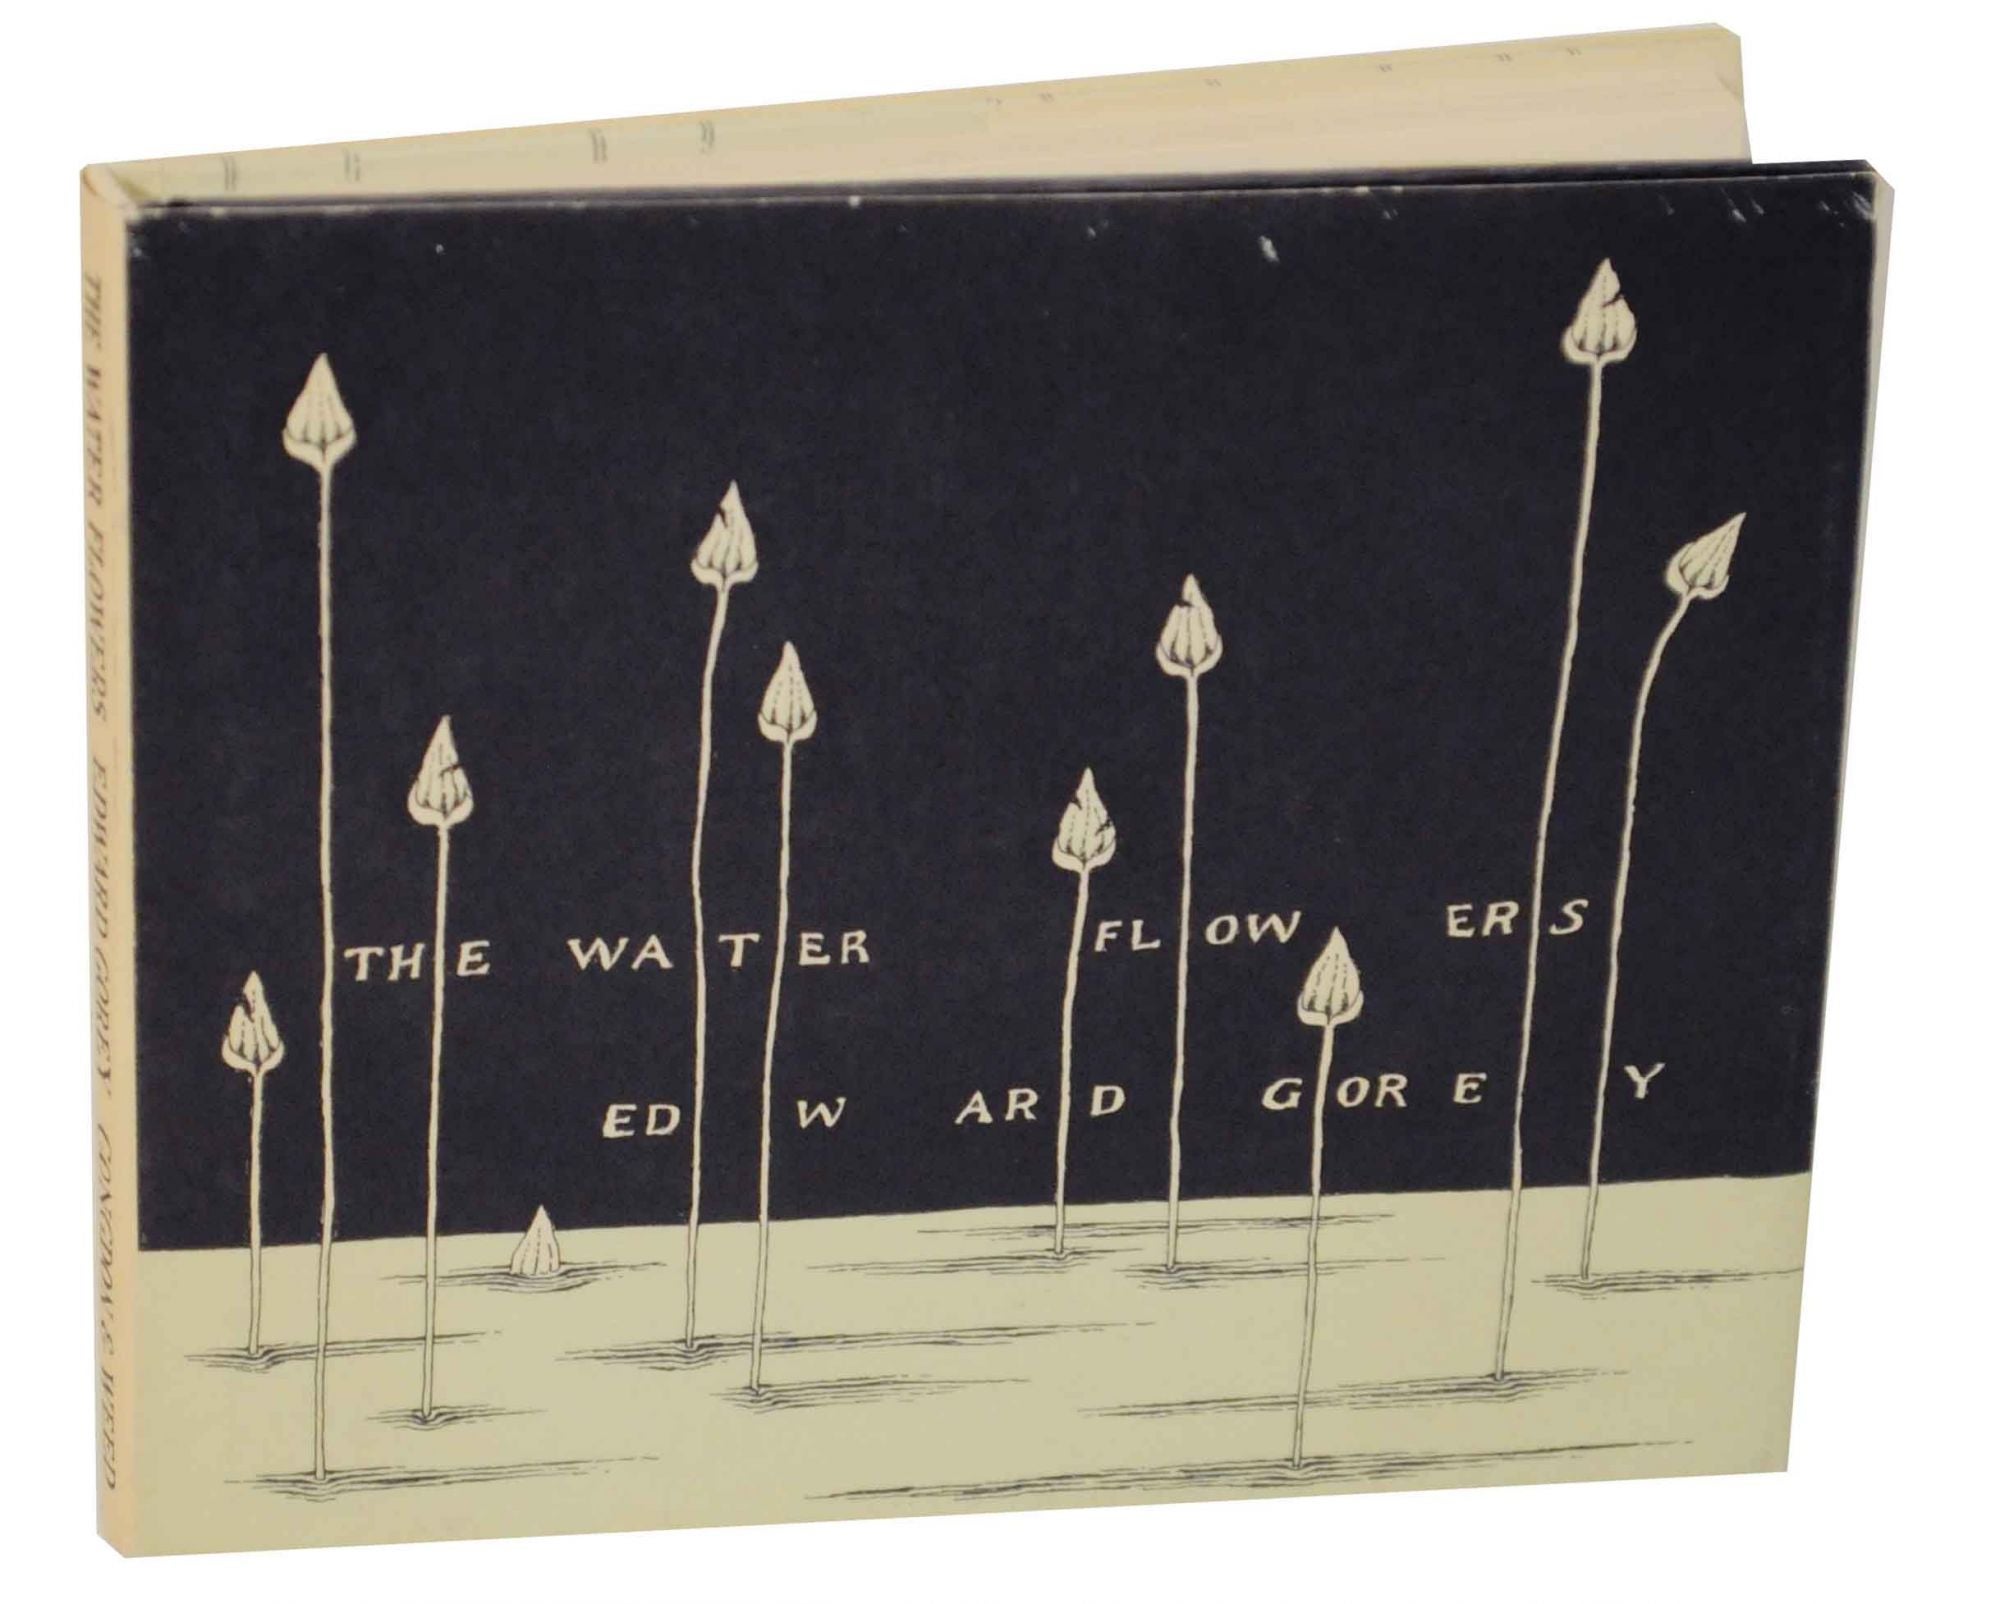 【サイン入り】THE WATER FLOWERS by EDWARD GOREY芸術一般